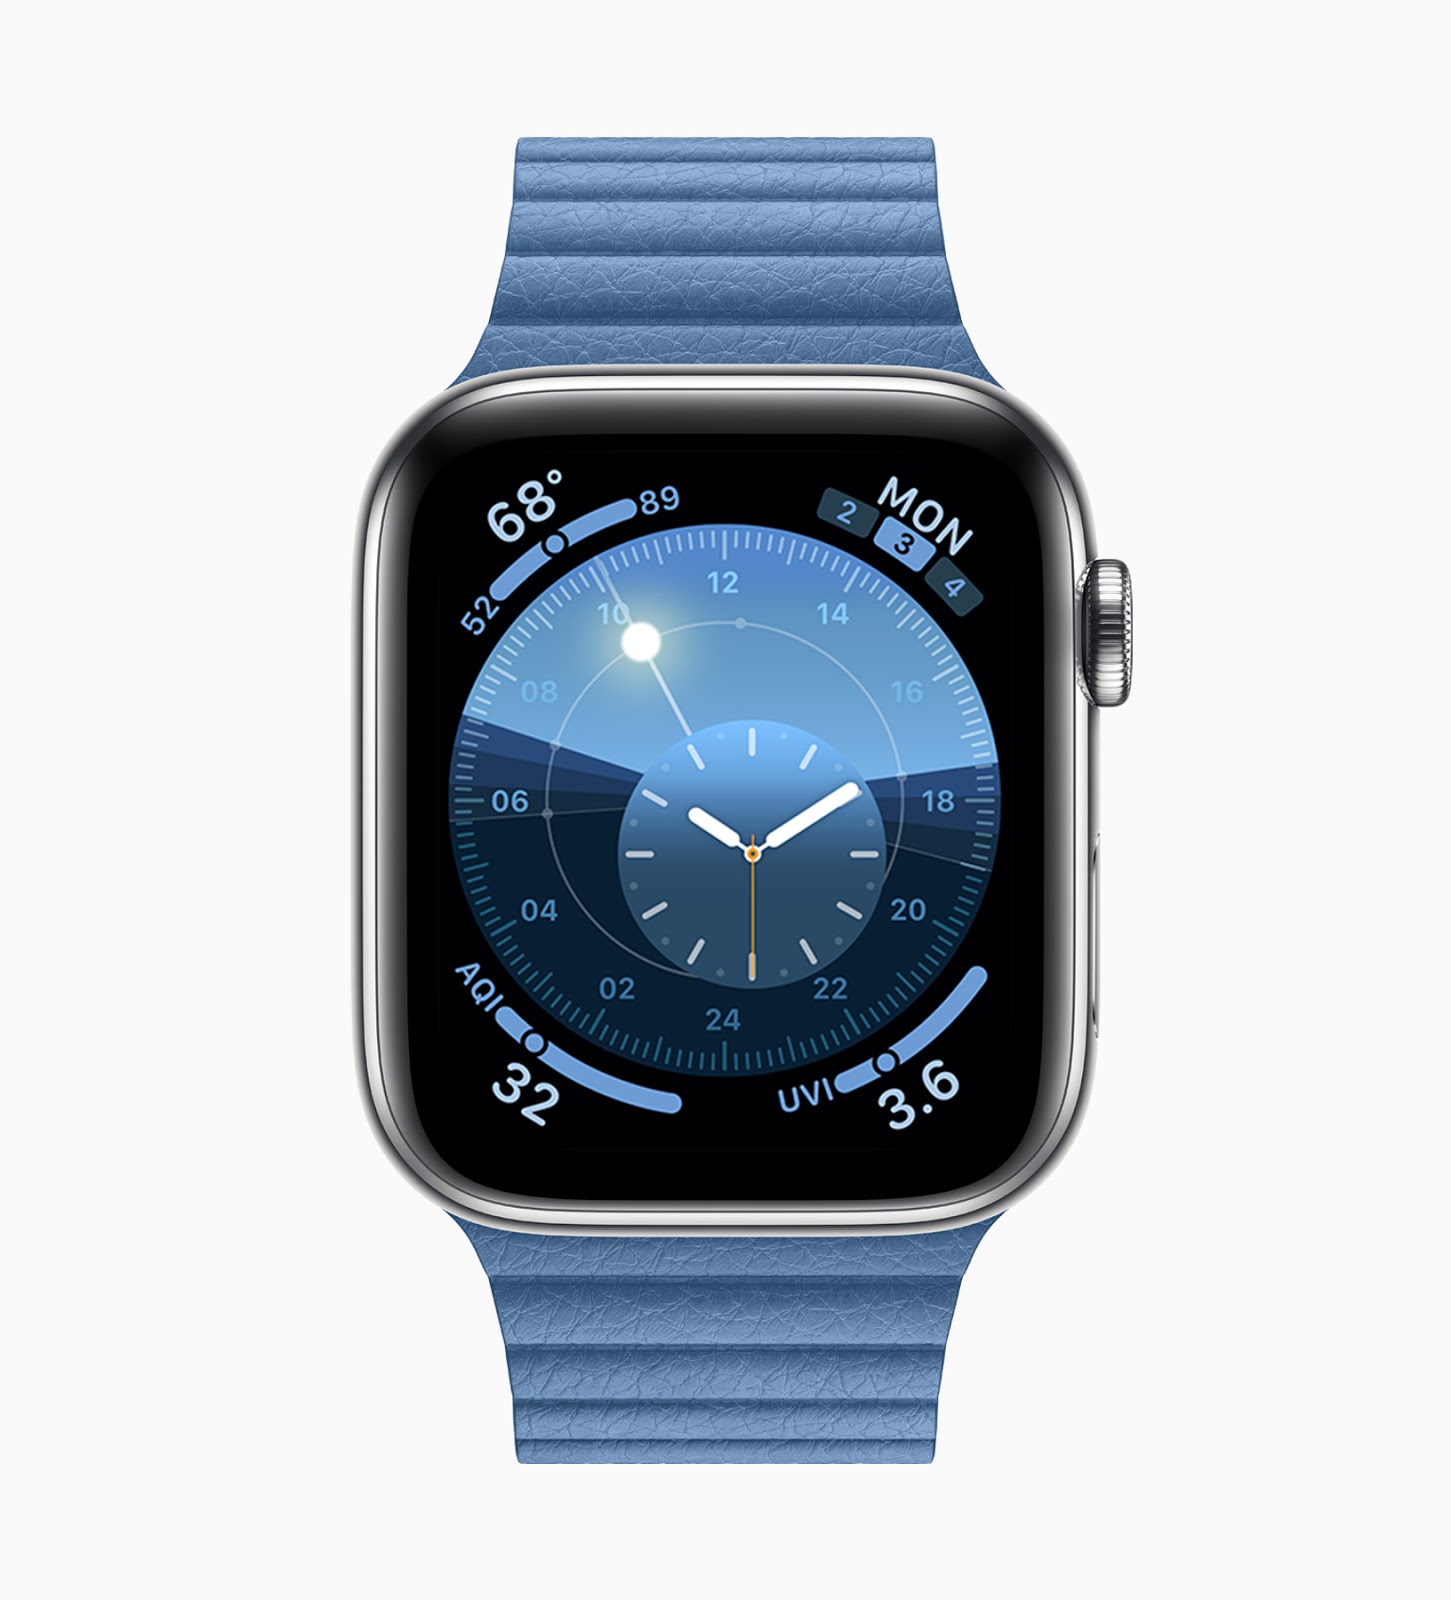 watchOS 6 開放更新！Apple Watch 正式脫離 iPhone | Apple News, Apple Watch, Noise app, watchOS 6 | iPhone News 愛瘋了